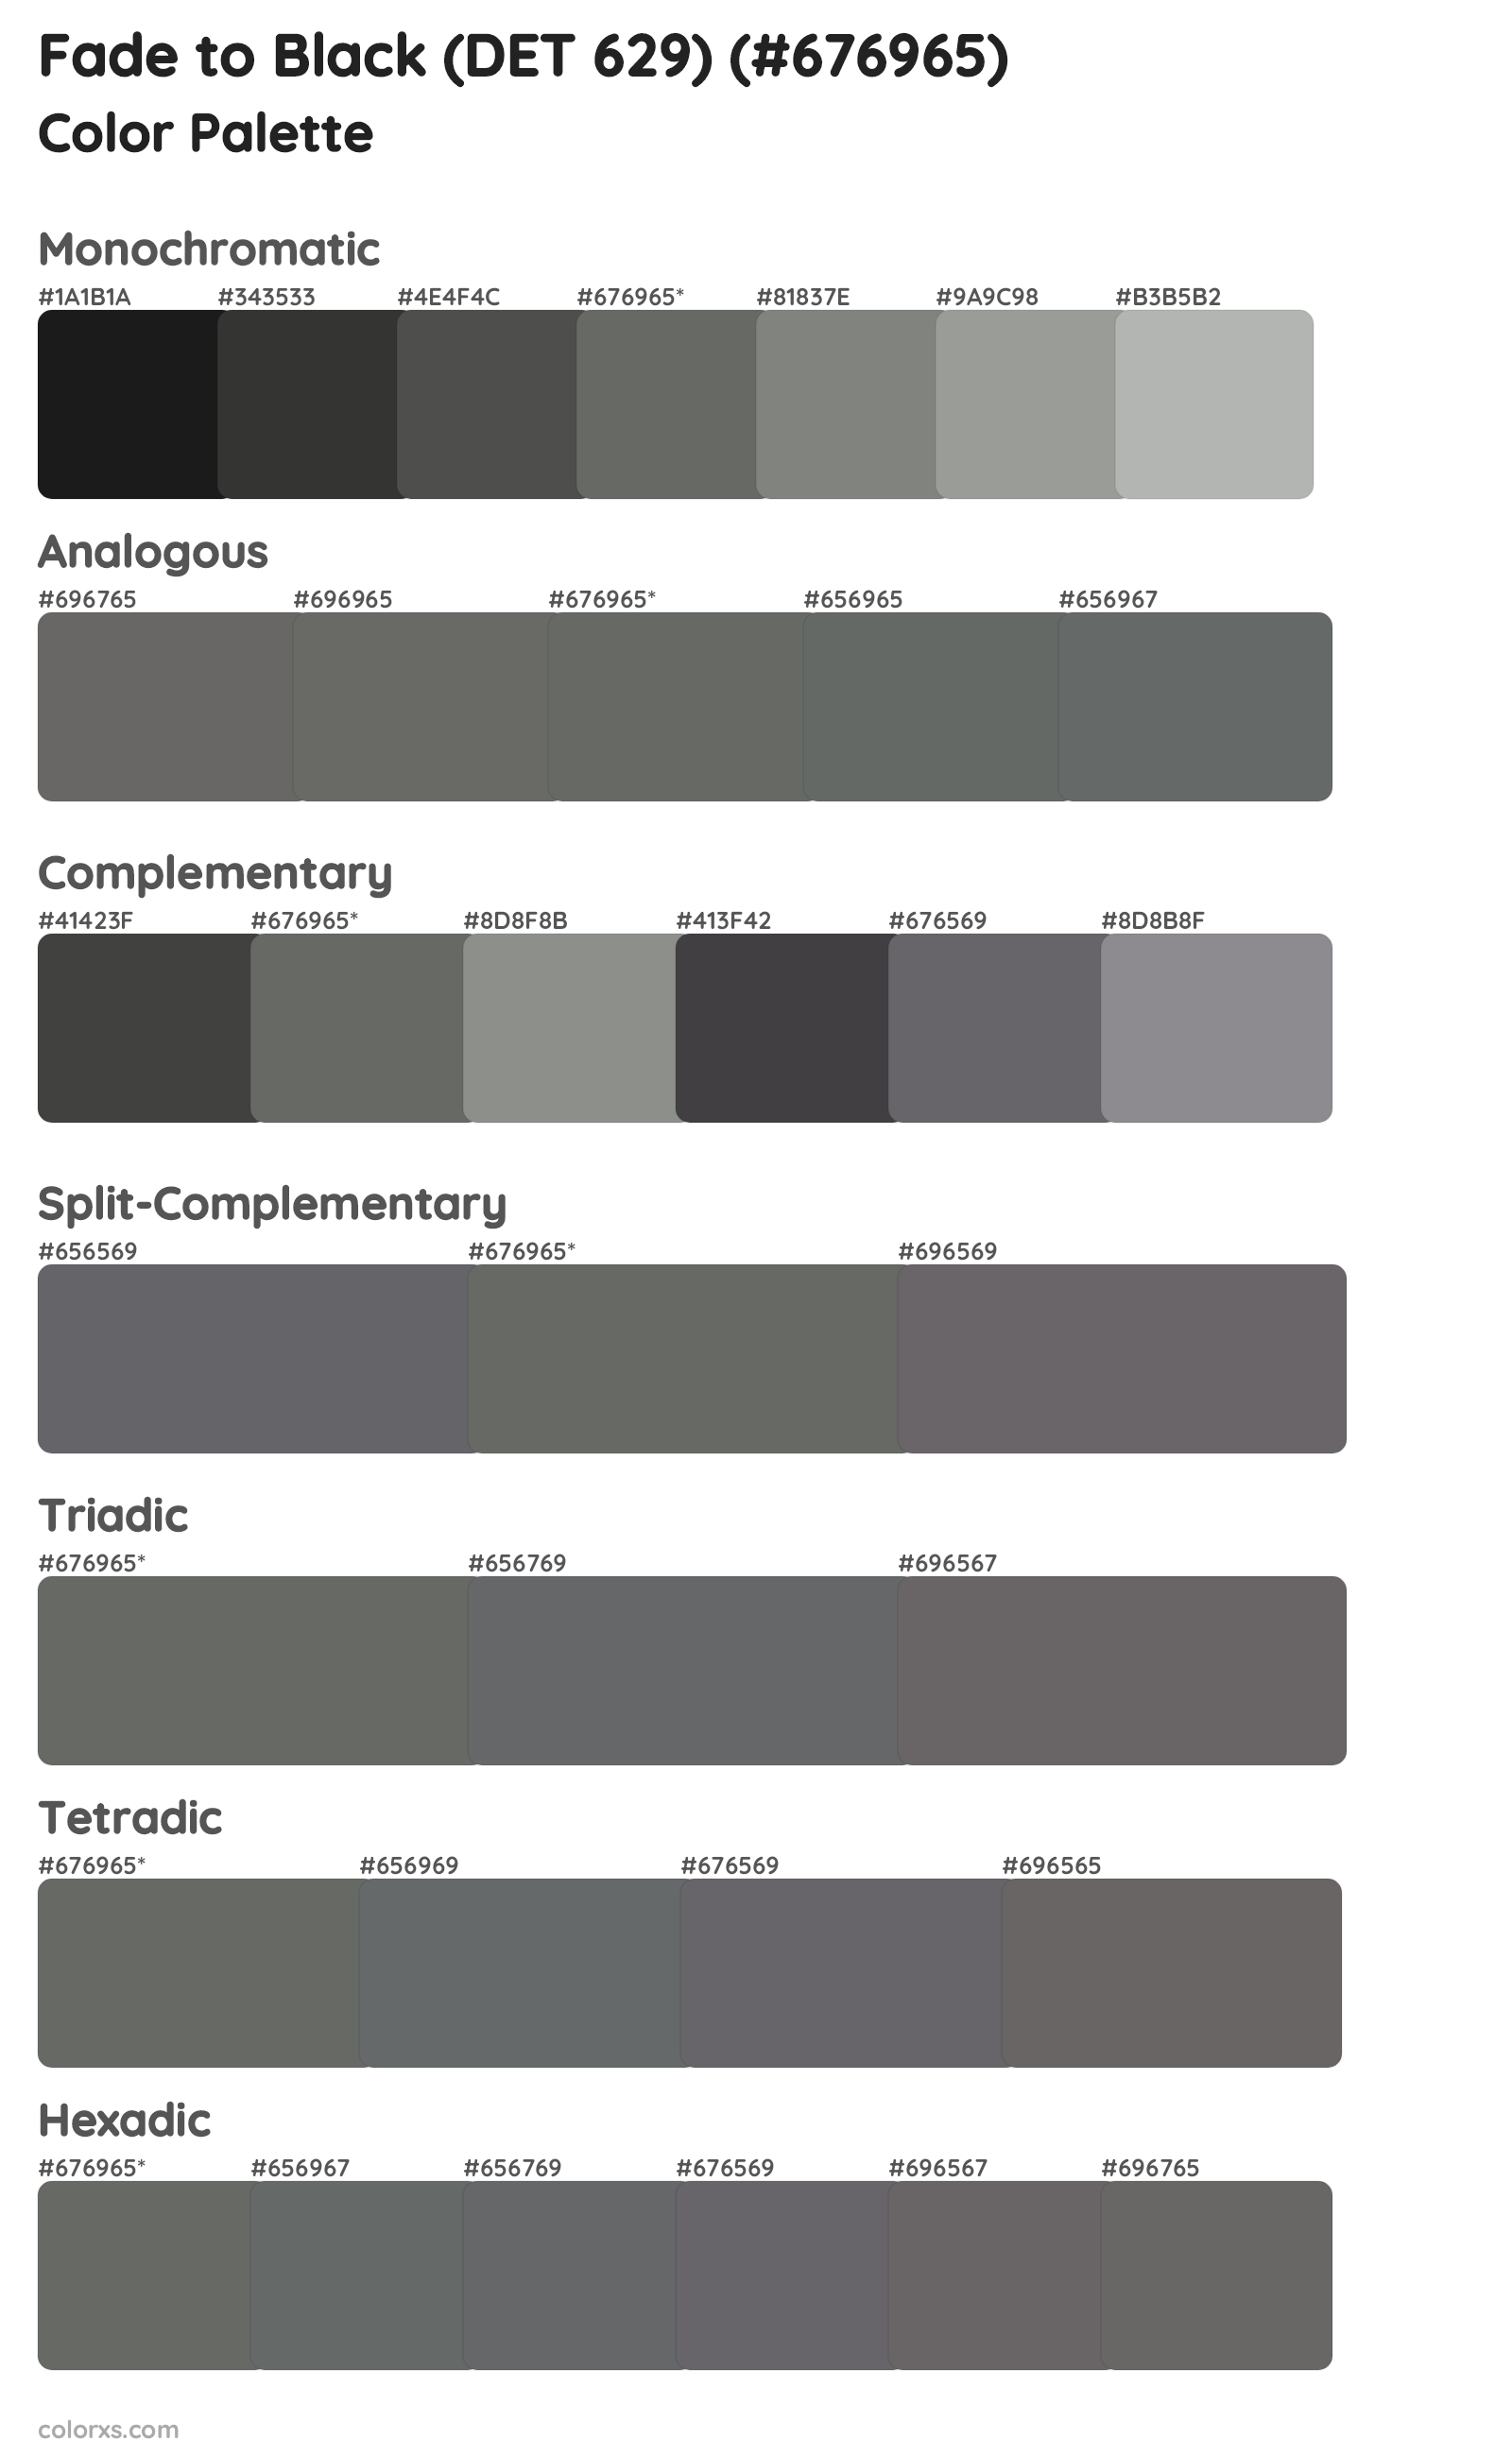 Fade to Black (DET 629) Color Scheme Palettes